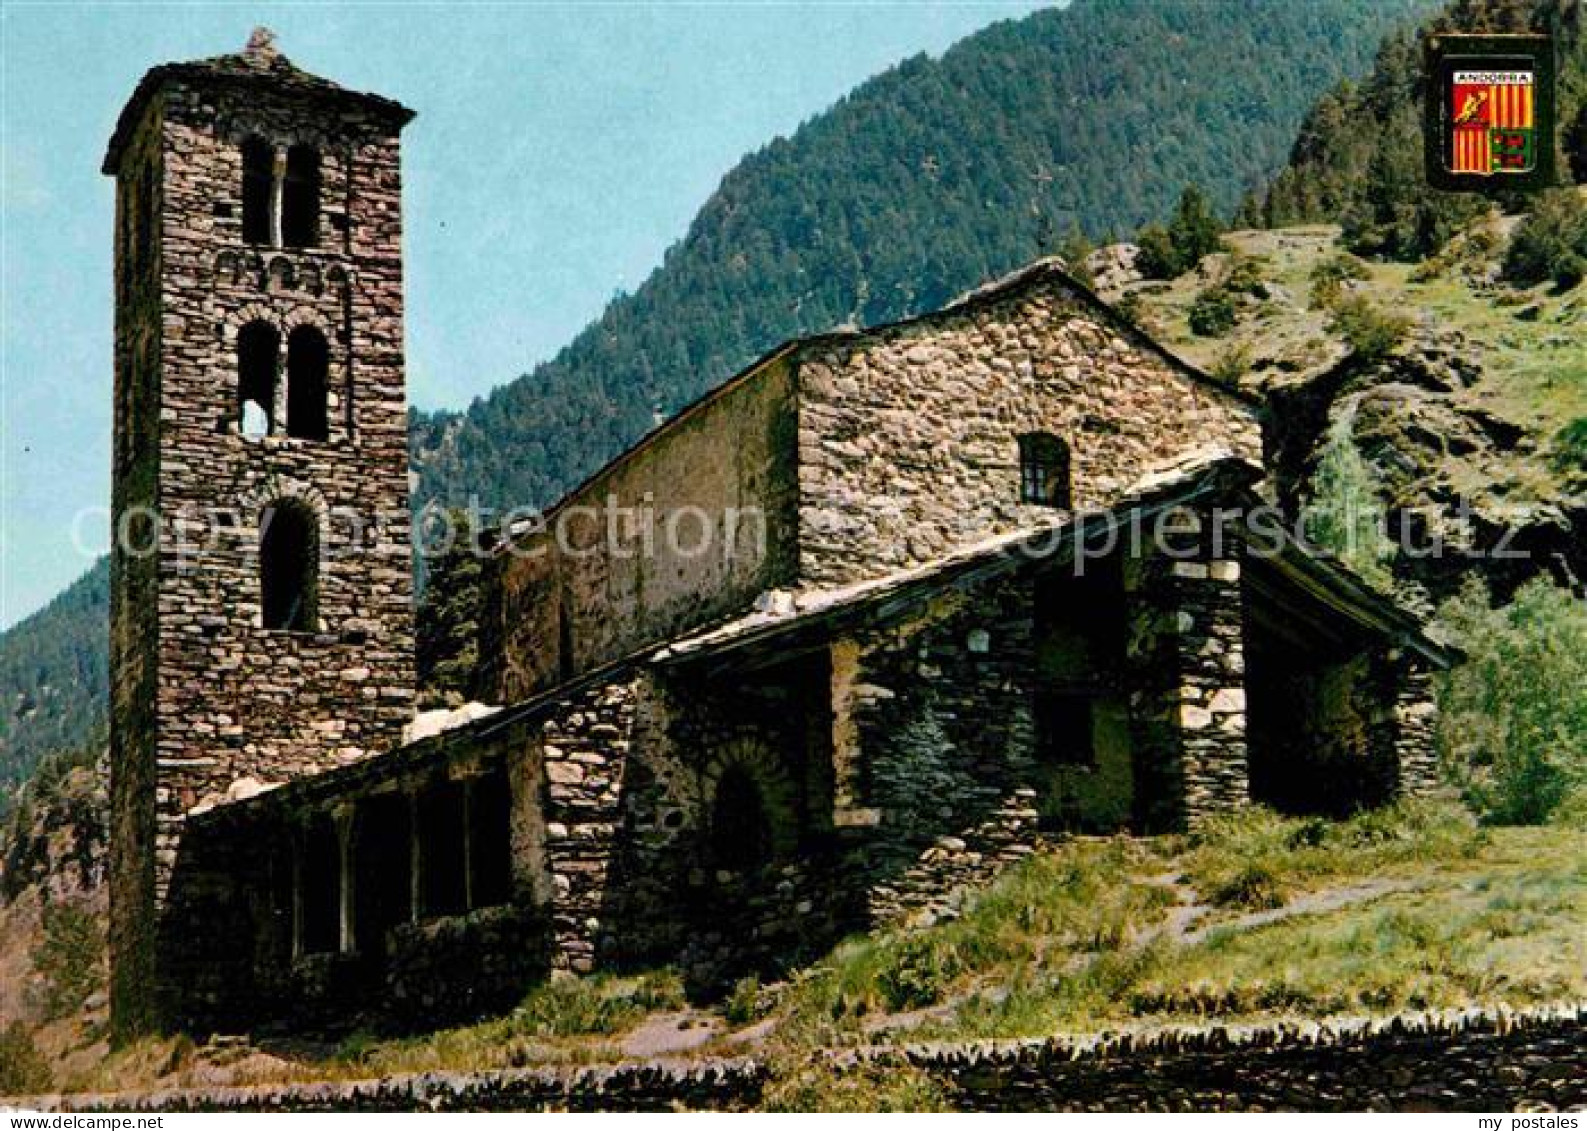 72655007 Valls D Andorra Sant Joan De Casselles Valls D Andorra - Andorre